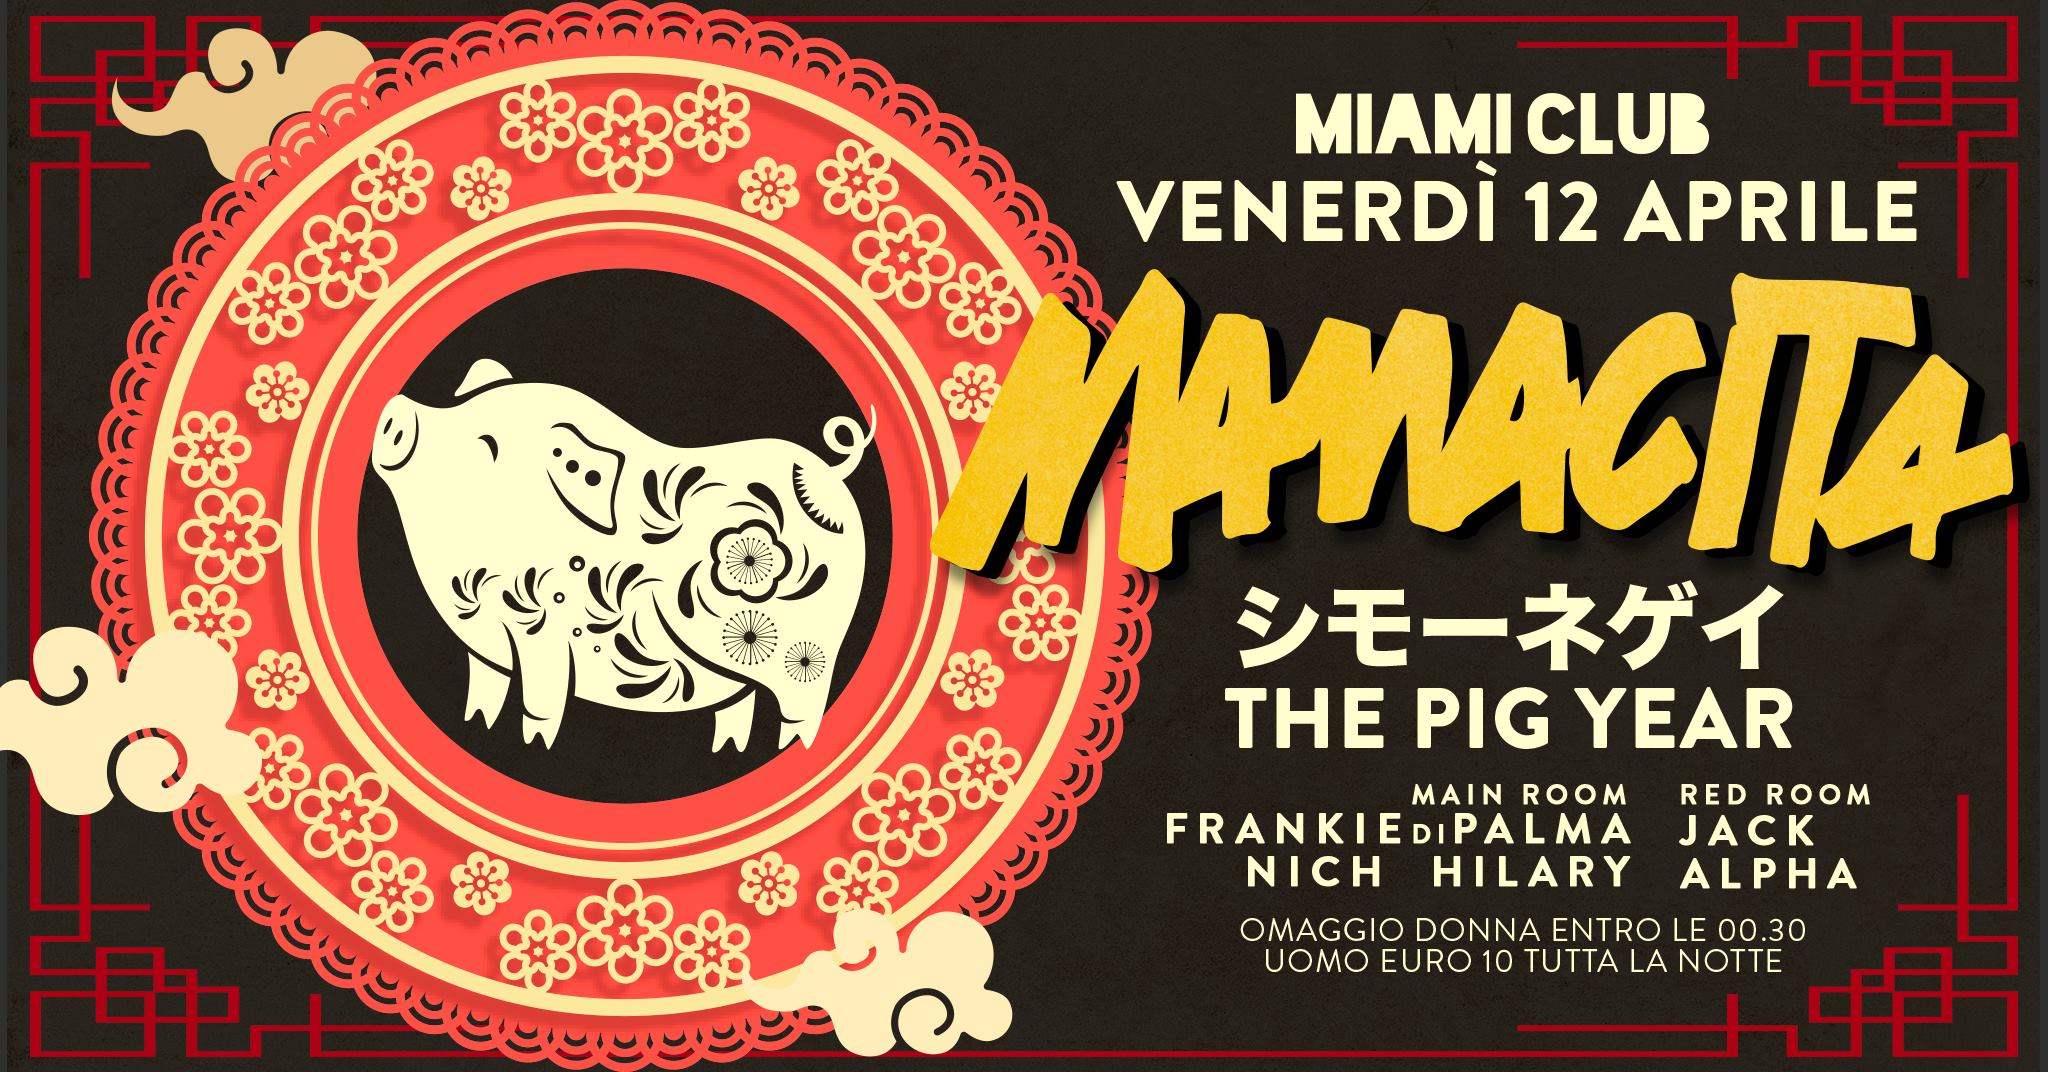 The Pig Year Miami Club Monsano